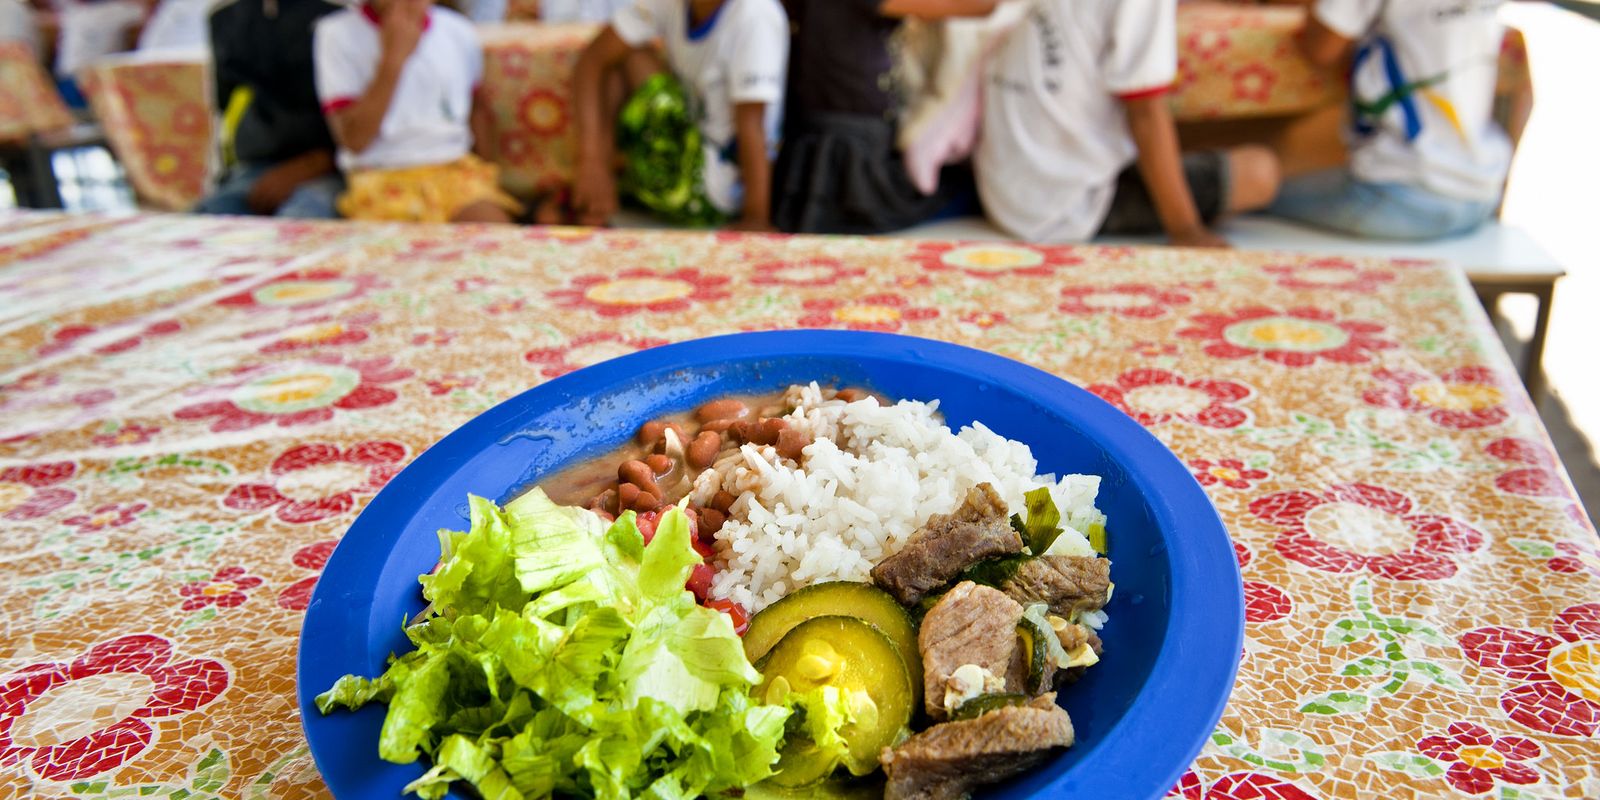 Rio aprova projeto que proíbe alimentos ultraprocessados nas escolas